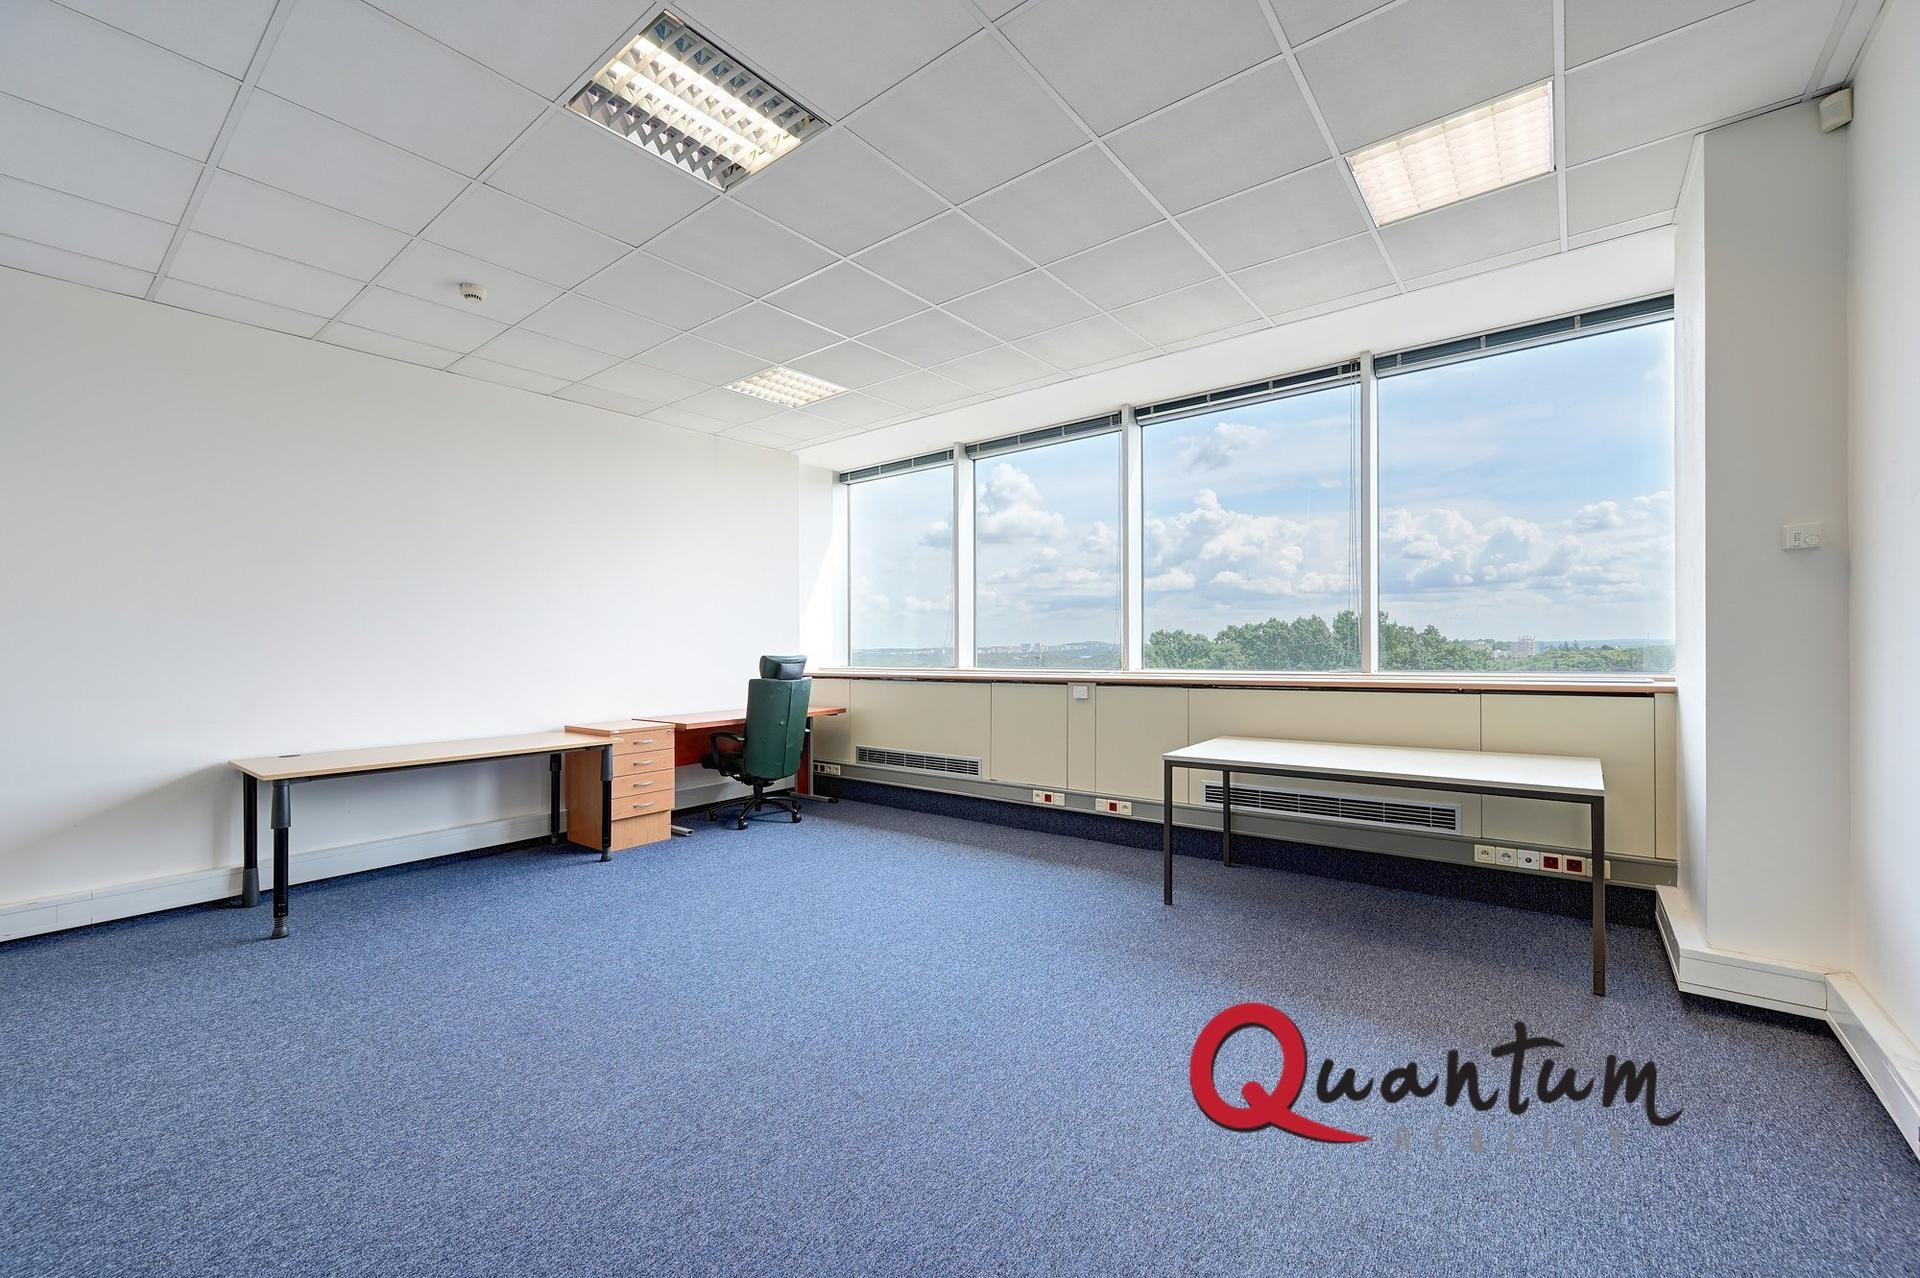 Pronájem kanceláře 44 m2 v administrativní budově Shiran Tower, Praha 6 - Vokovice, ul. Lužná